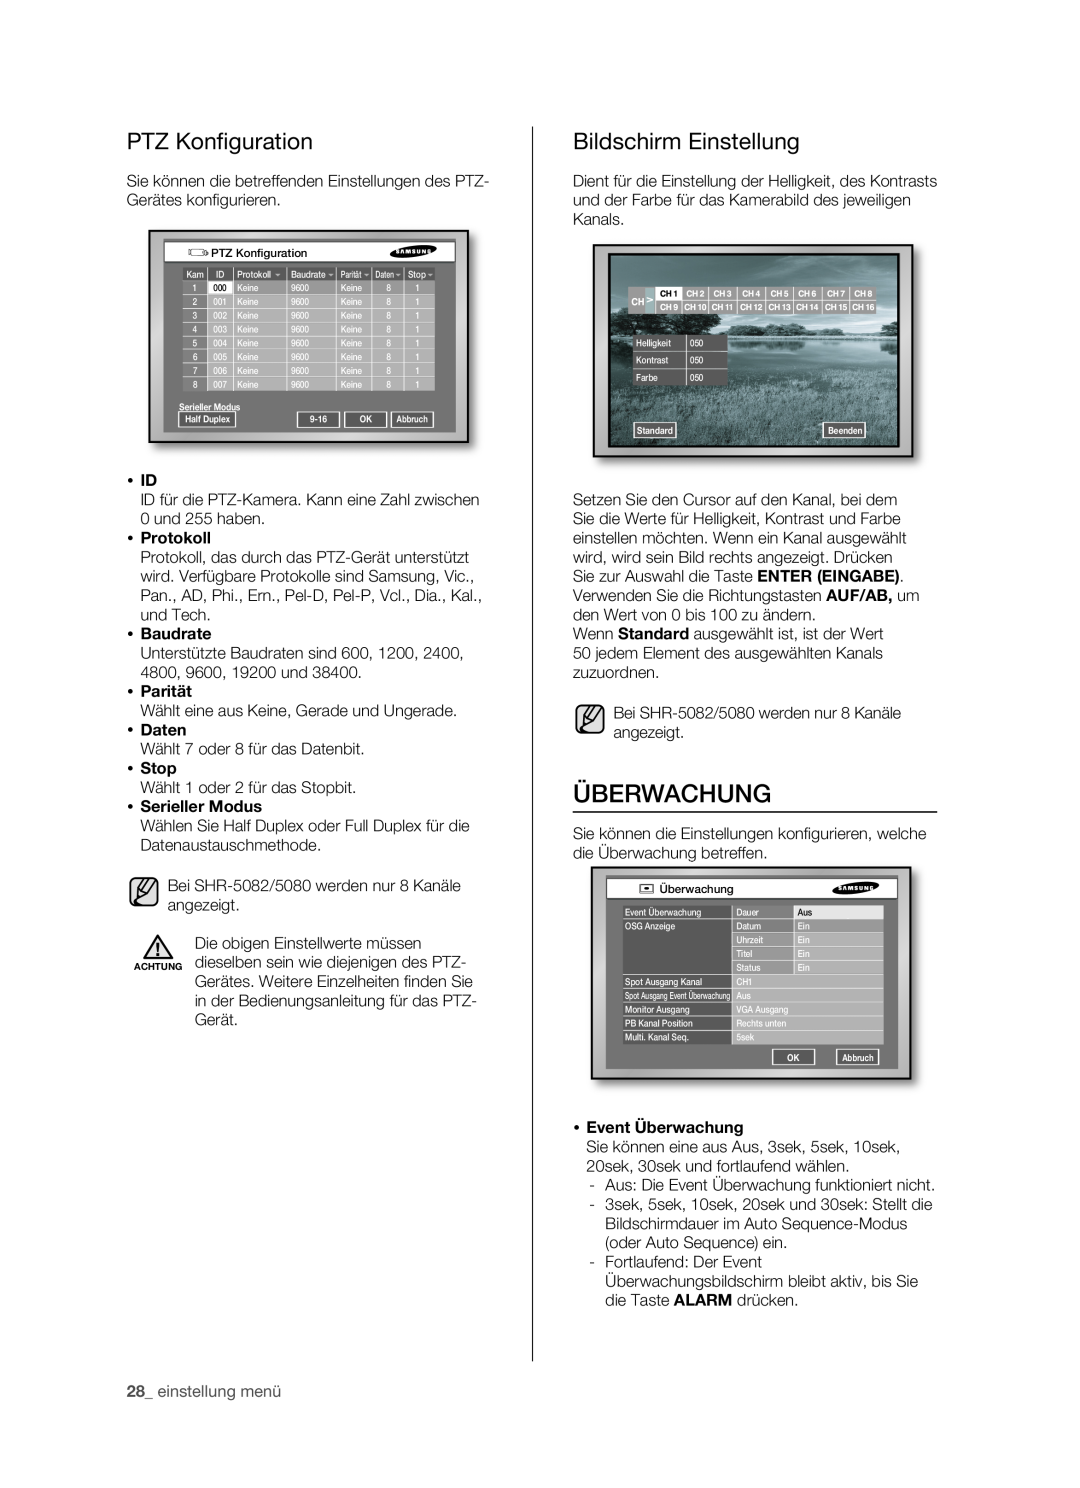 Samsung SHR-5162P/XEG Überwachung, PTZ Konﬁ guration, Bildschirm Einstellung,  Id,  Protokoll,  Baudrate,  Parität 